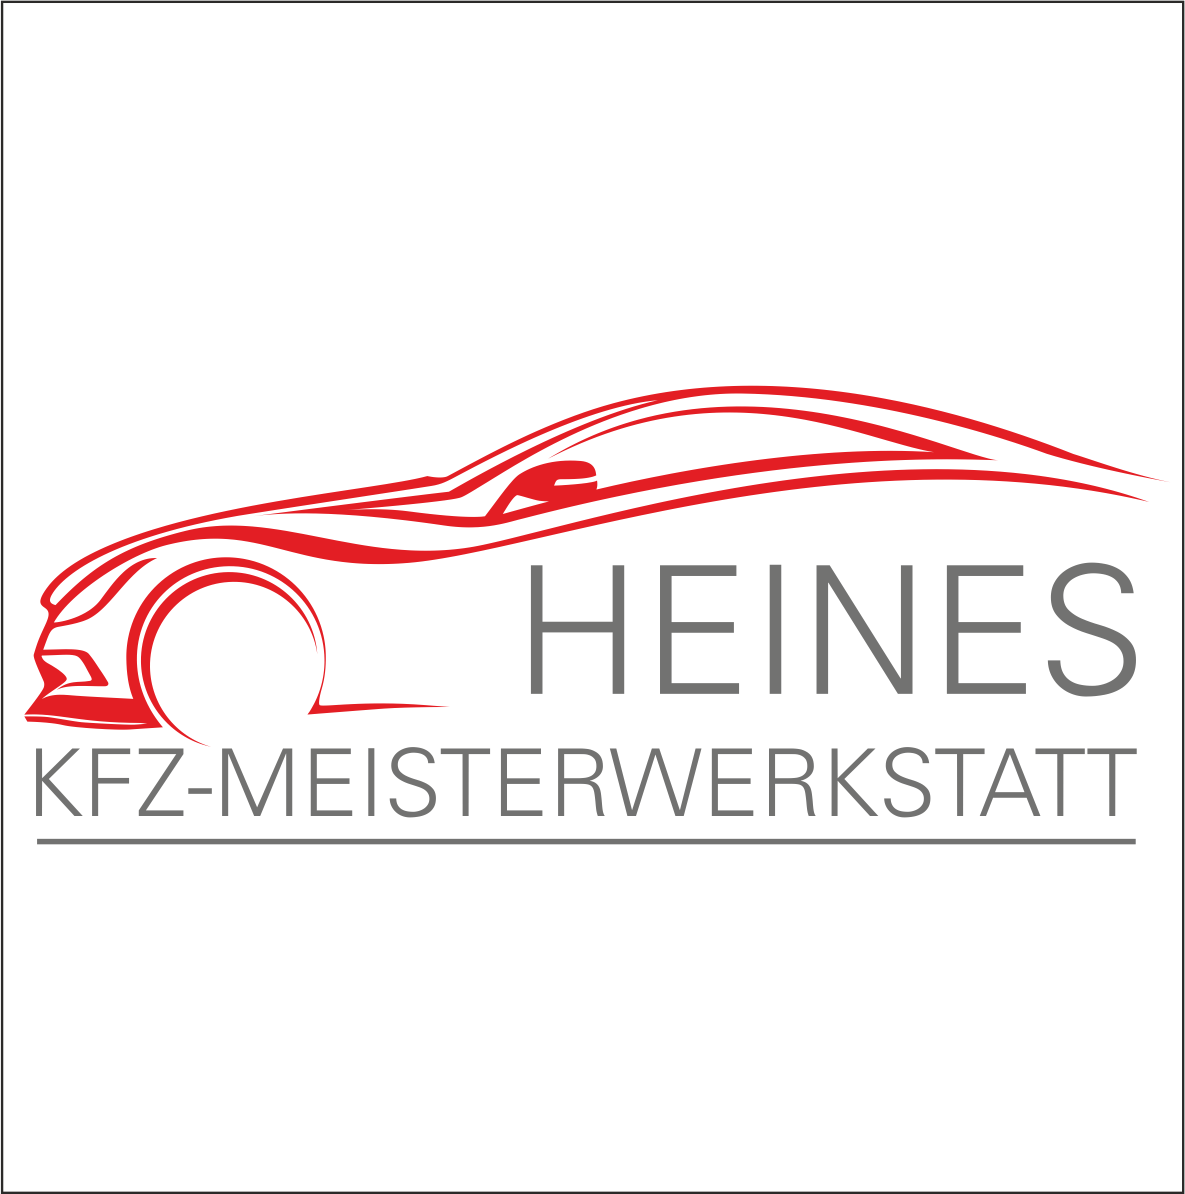 Heines KFZ